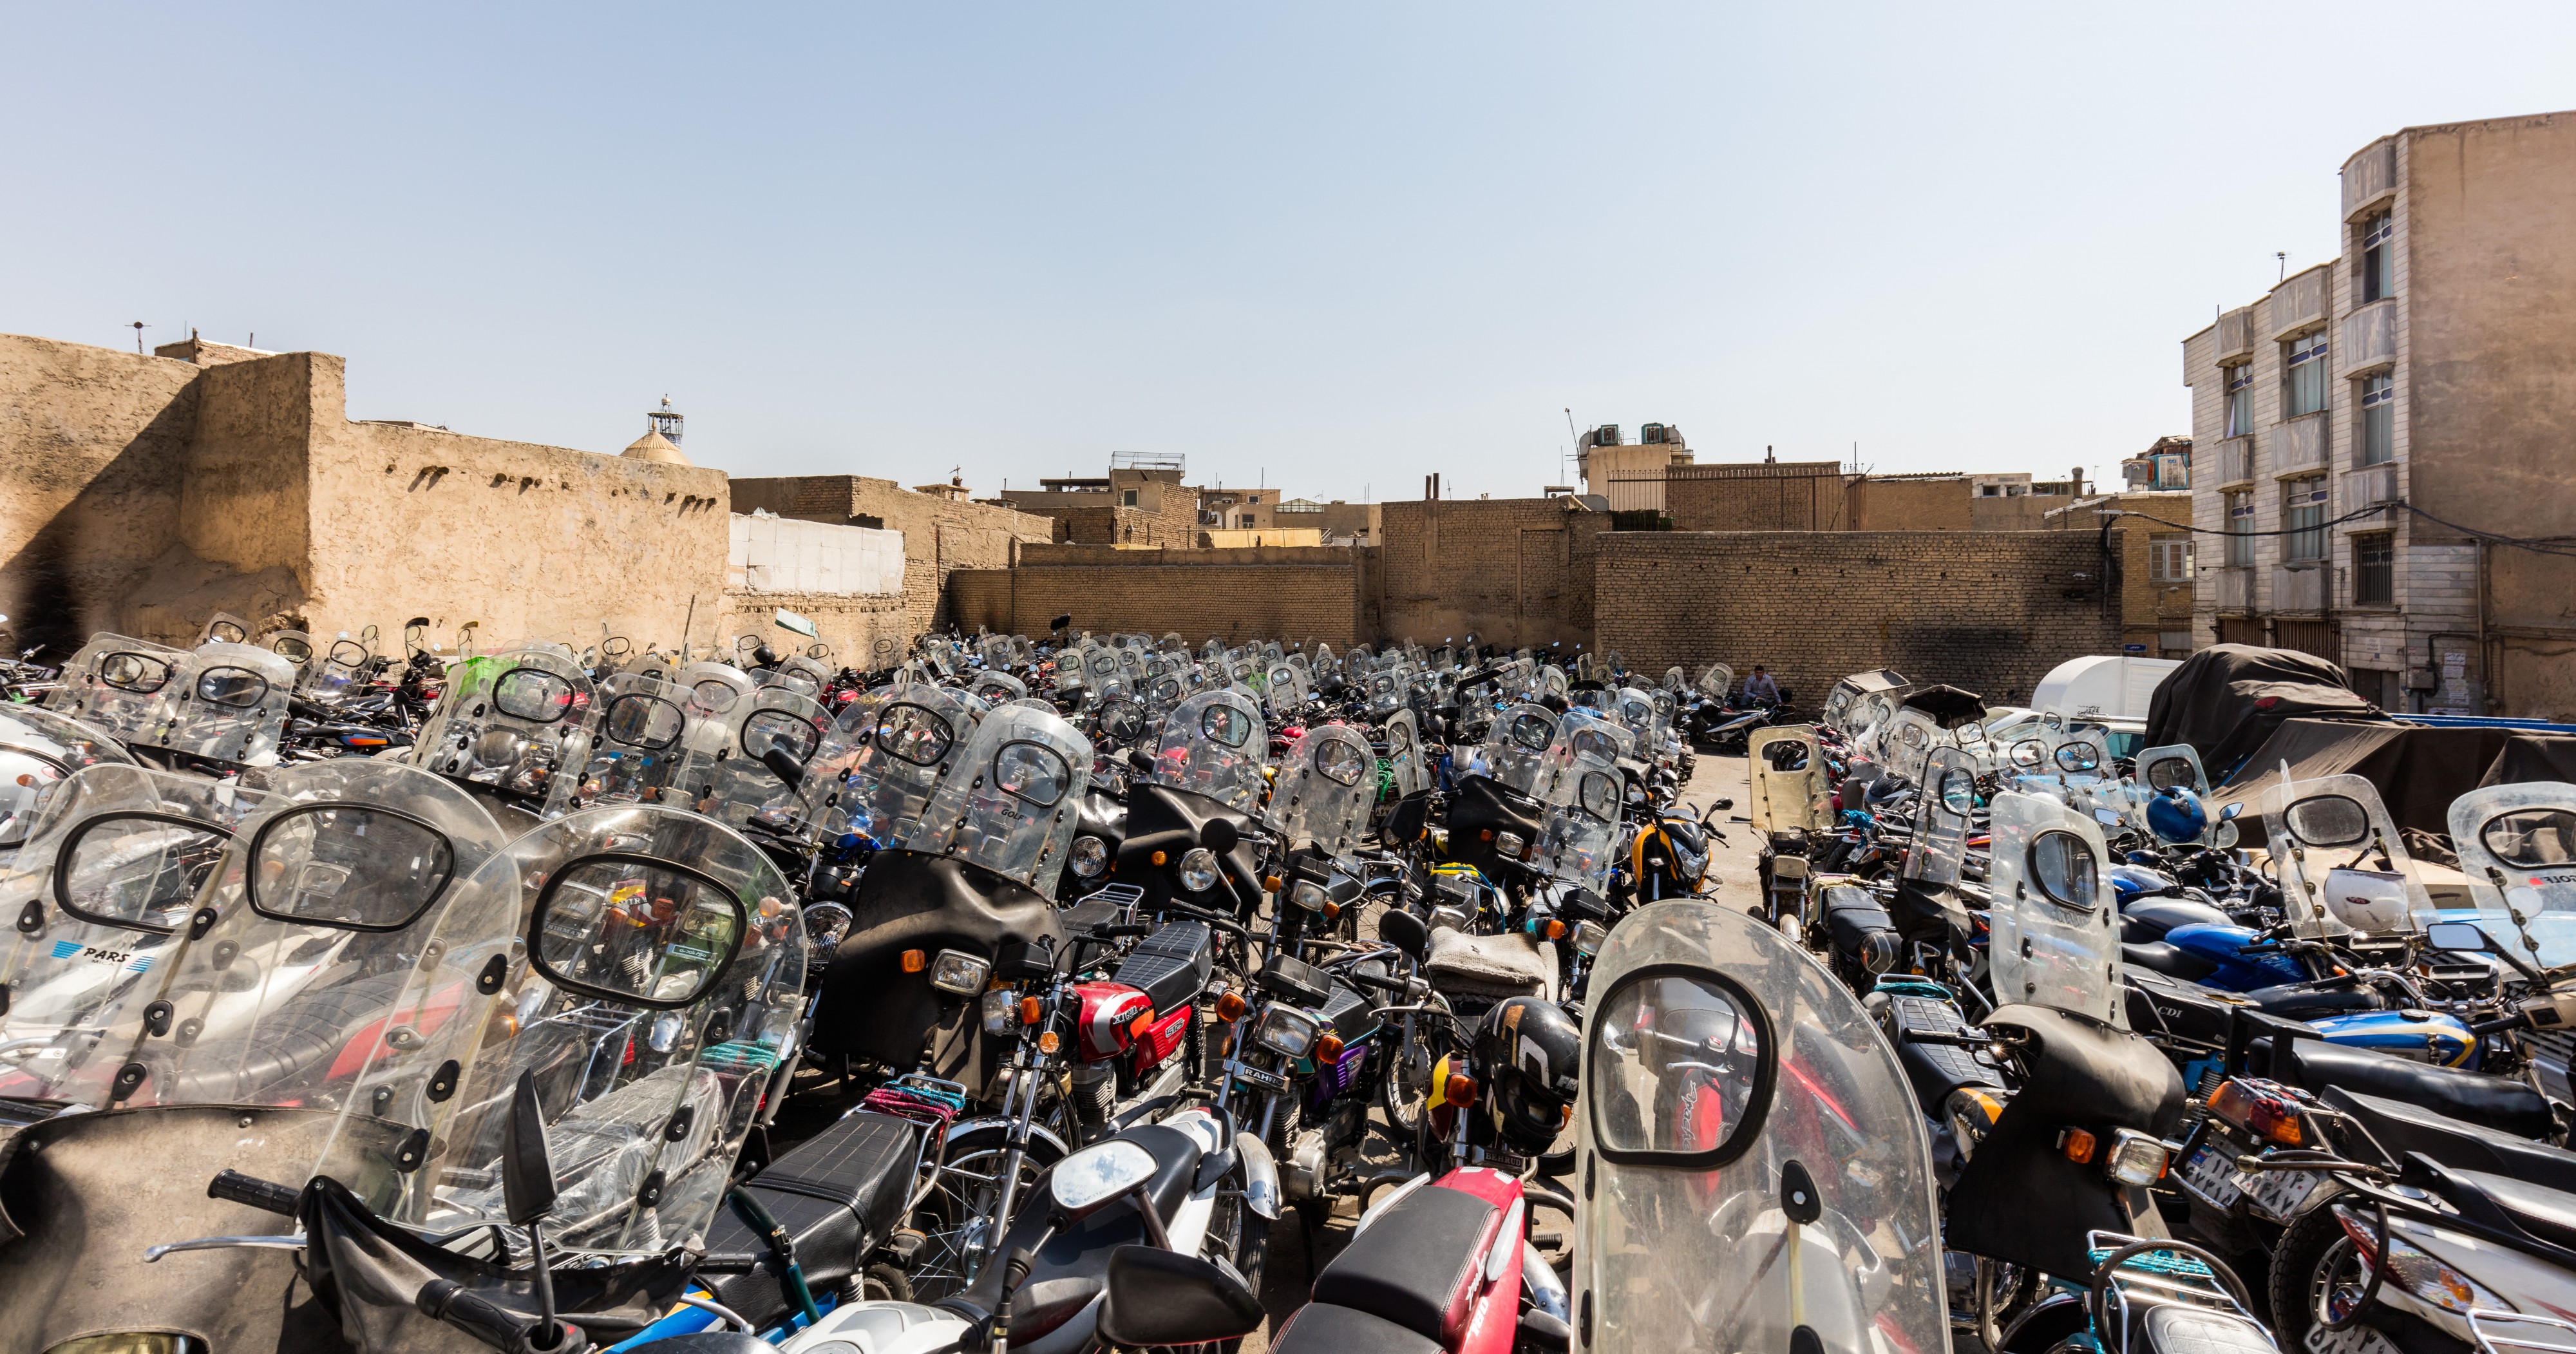 Estacionamiento de motocicletas, Teherán, Irán, 2016-09-17, DD 56